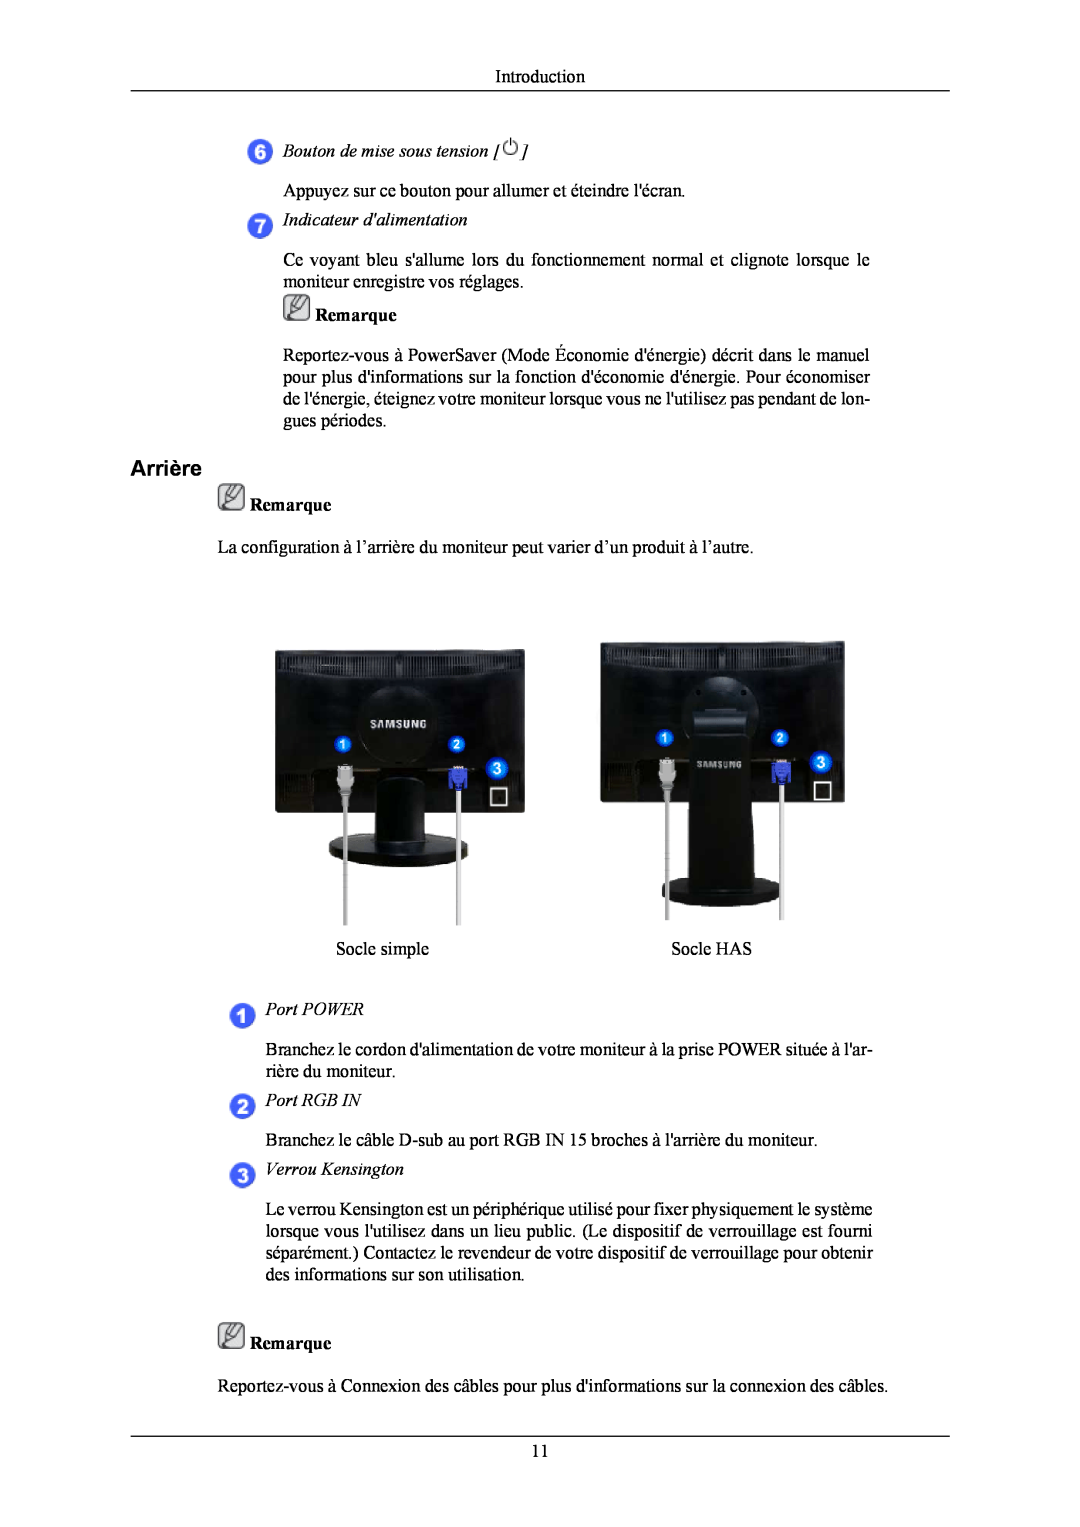 Samsung LS19MYNKB/EDC manual Arrière, Bouton de mise sous tension, Indicateur dalimentation, Port POWER, Port RGB IN 